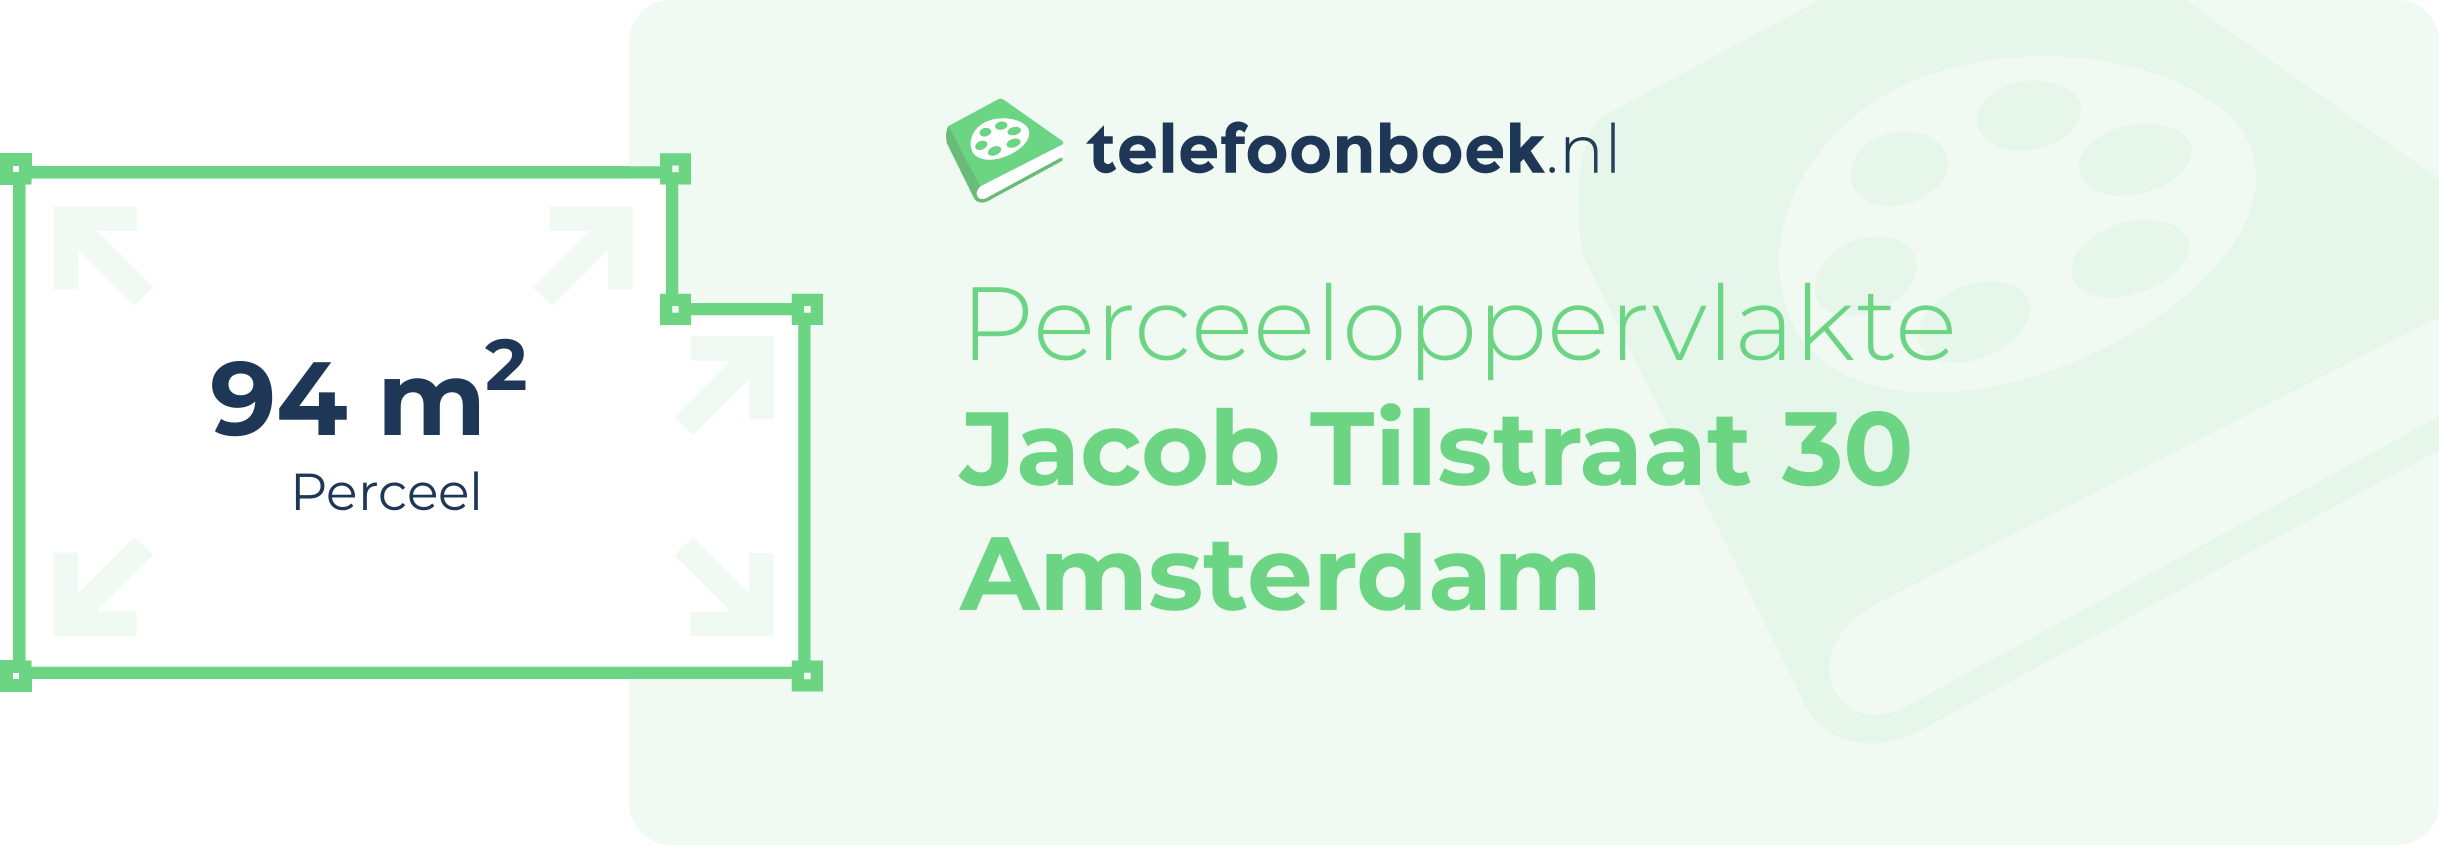 Perceeloppervlakte Jacob Tilstraat 30 Amsterdam